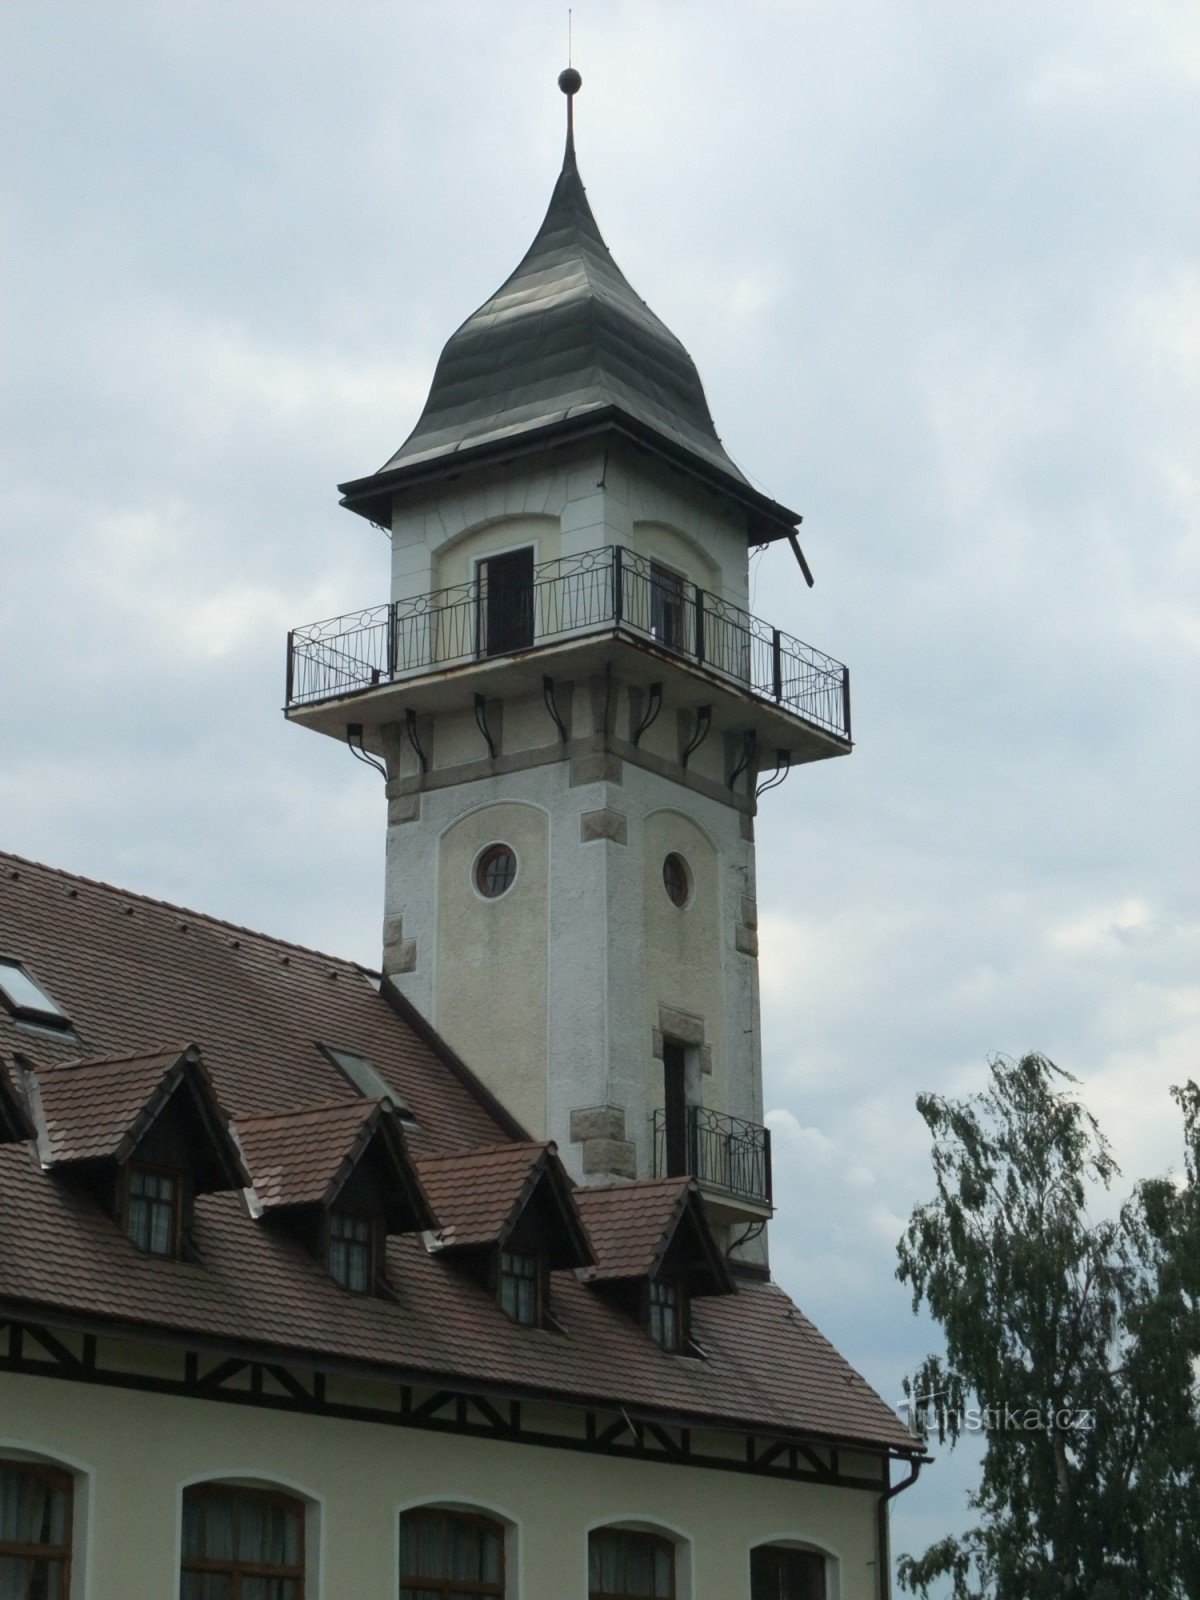 Petřín - Jablonec nad Nisou 瞭望塔就像在您的手掌中